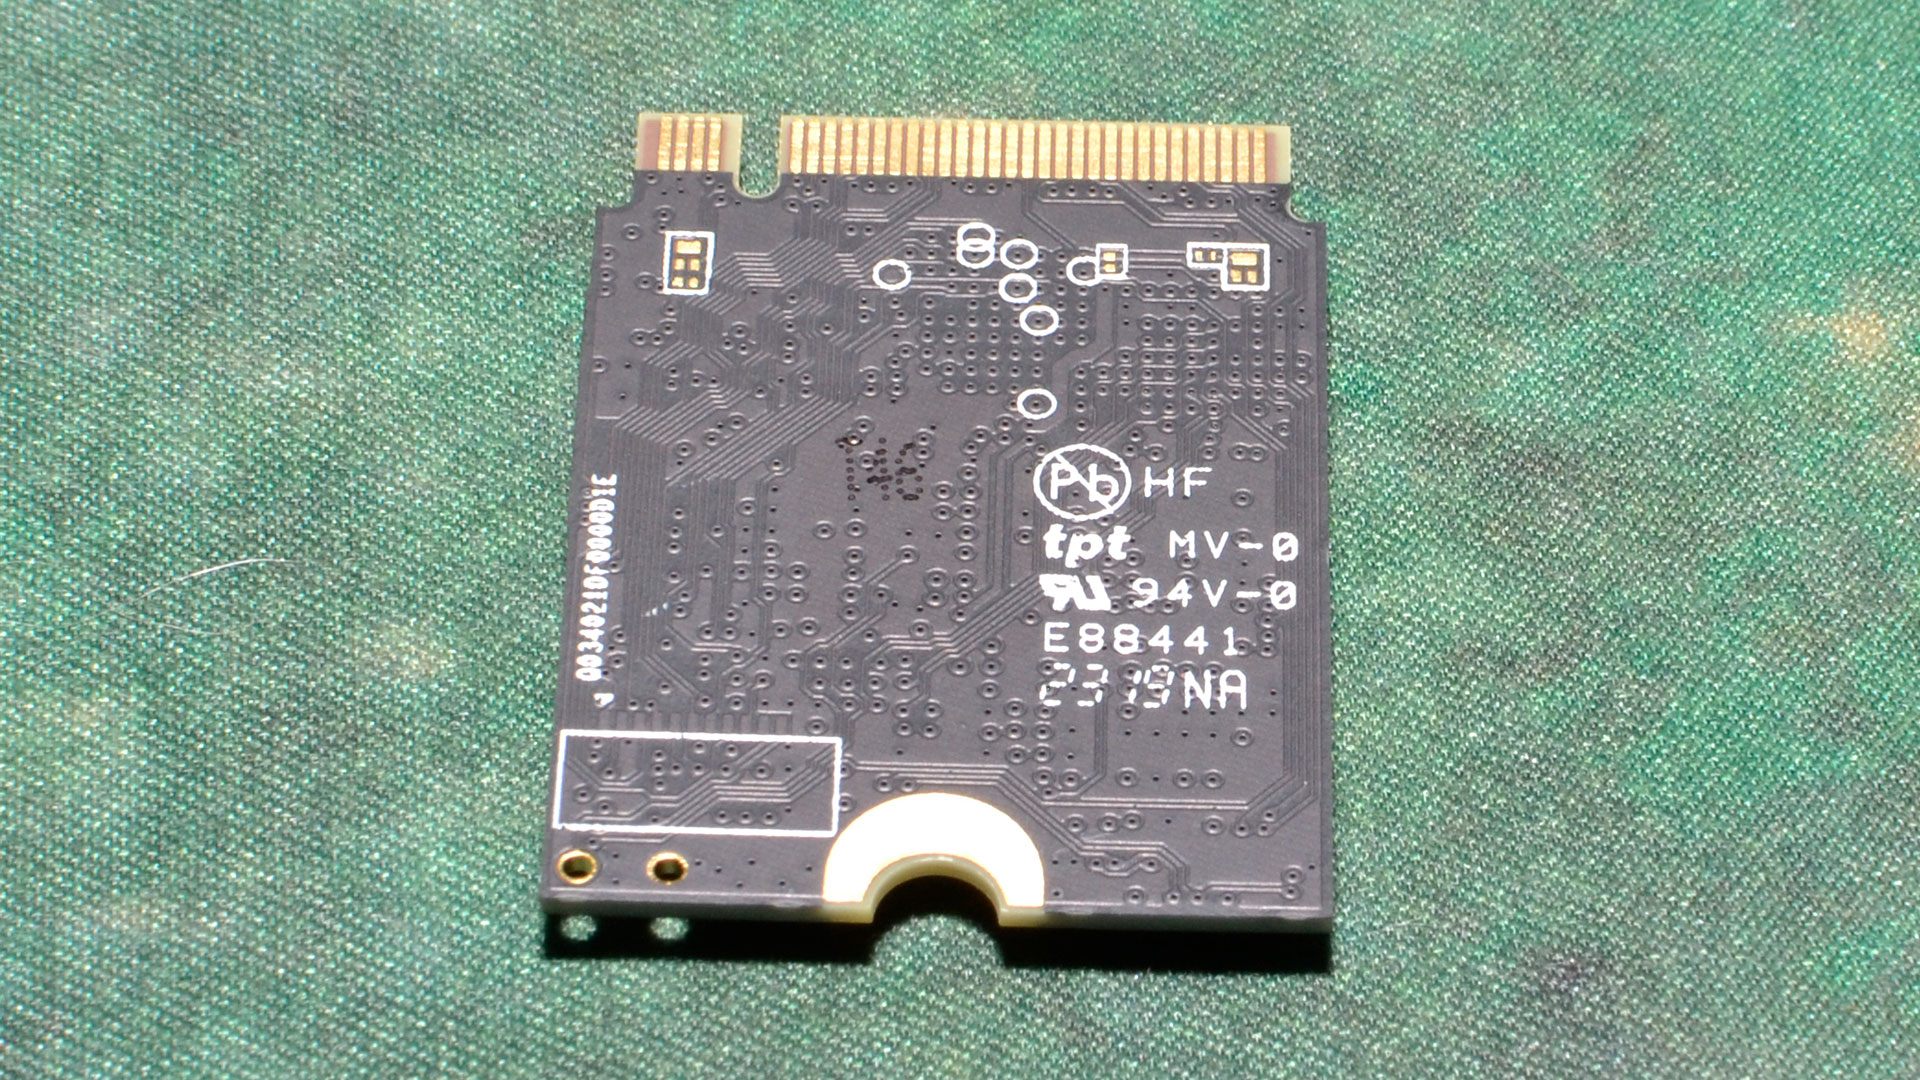 2TB Inland QN446 (2230) SSD